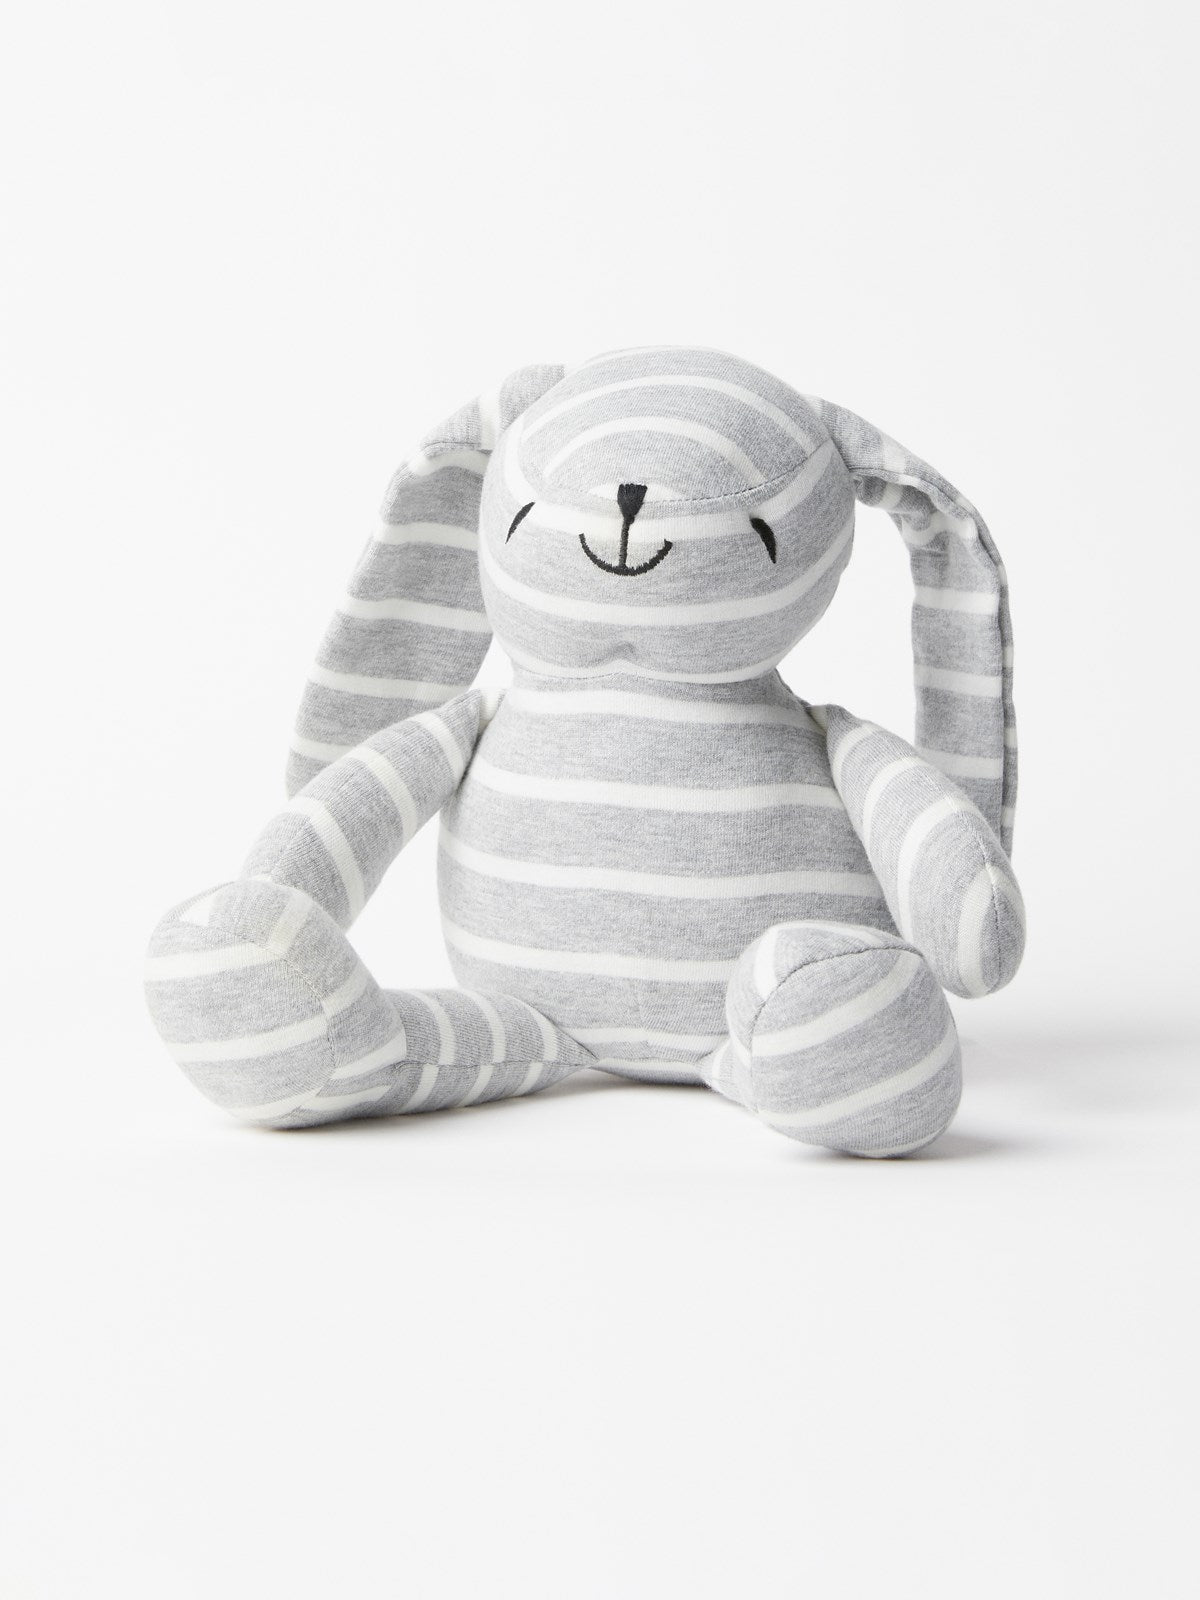 PO.P Stripe Bunny Soft Toy